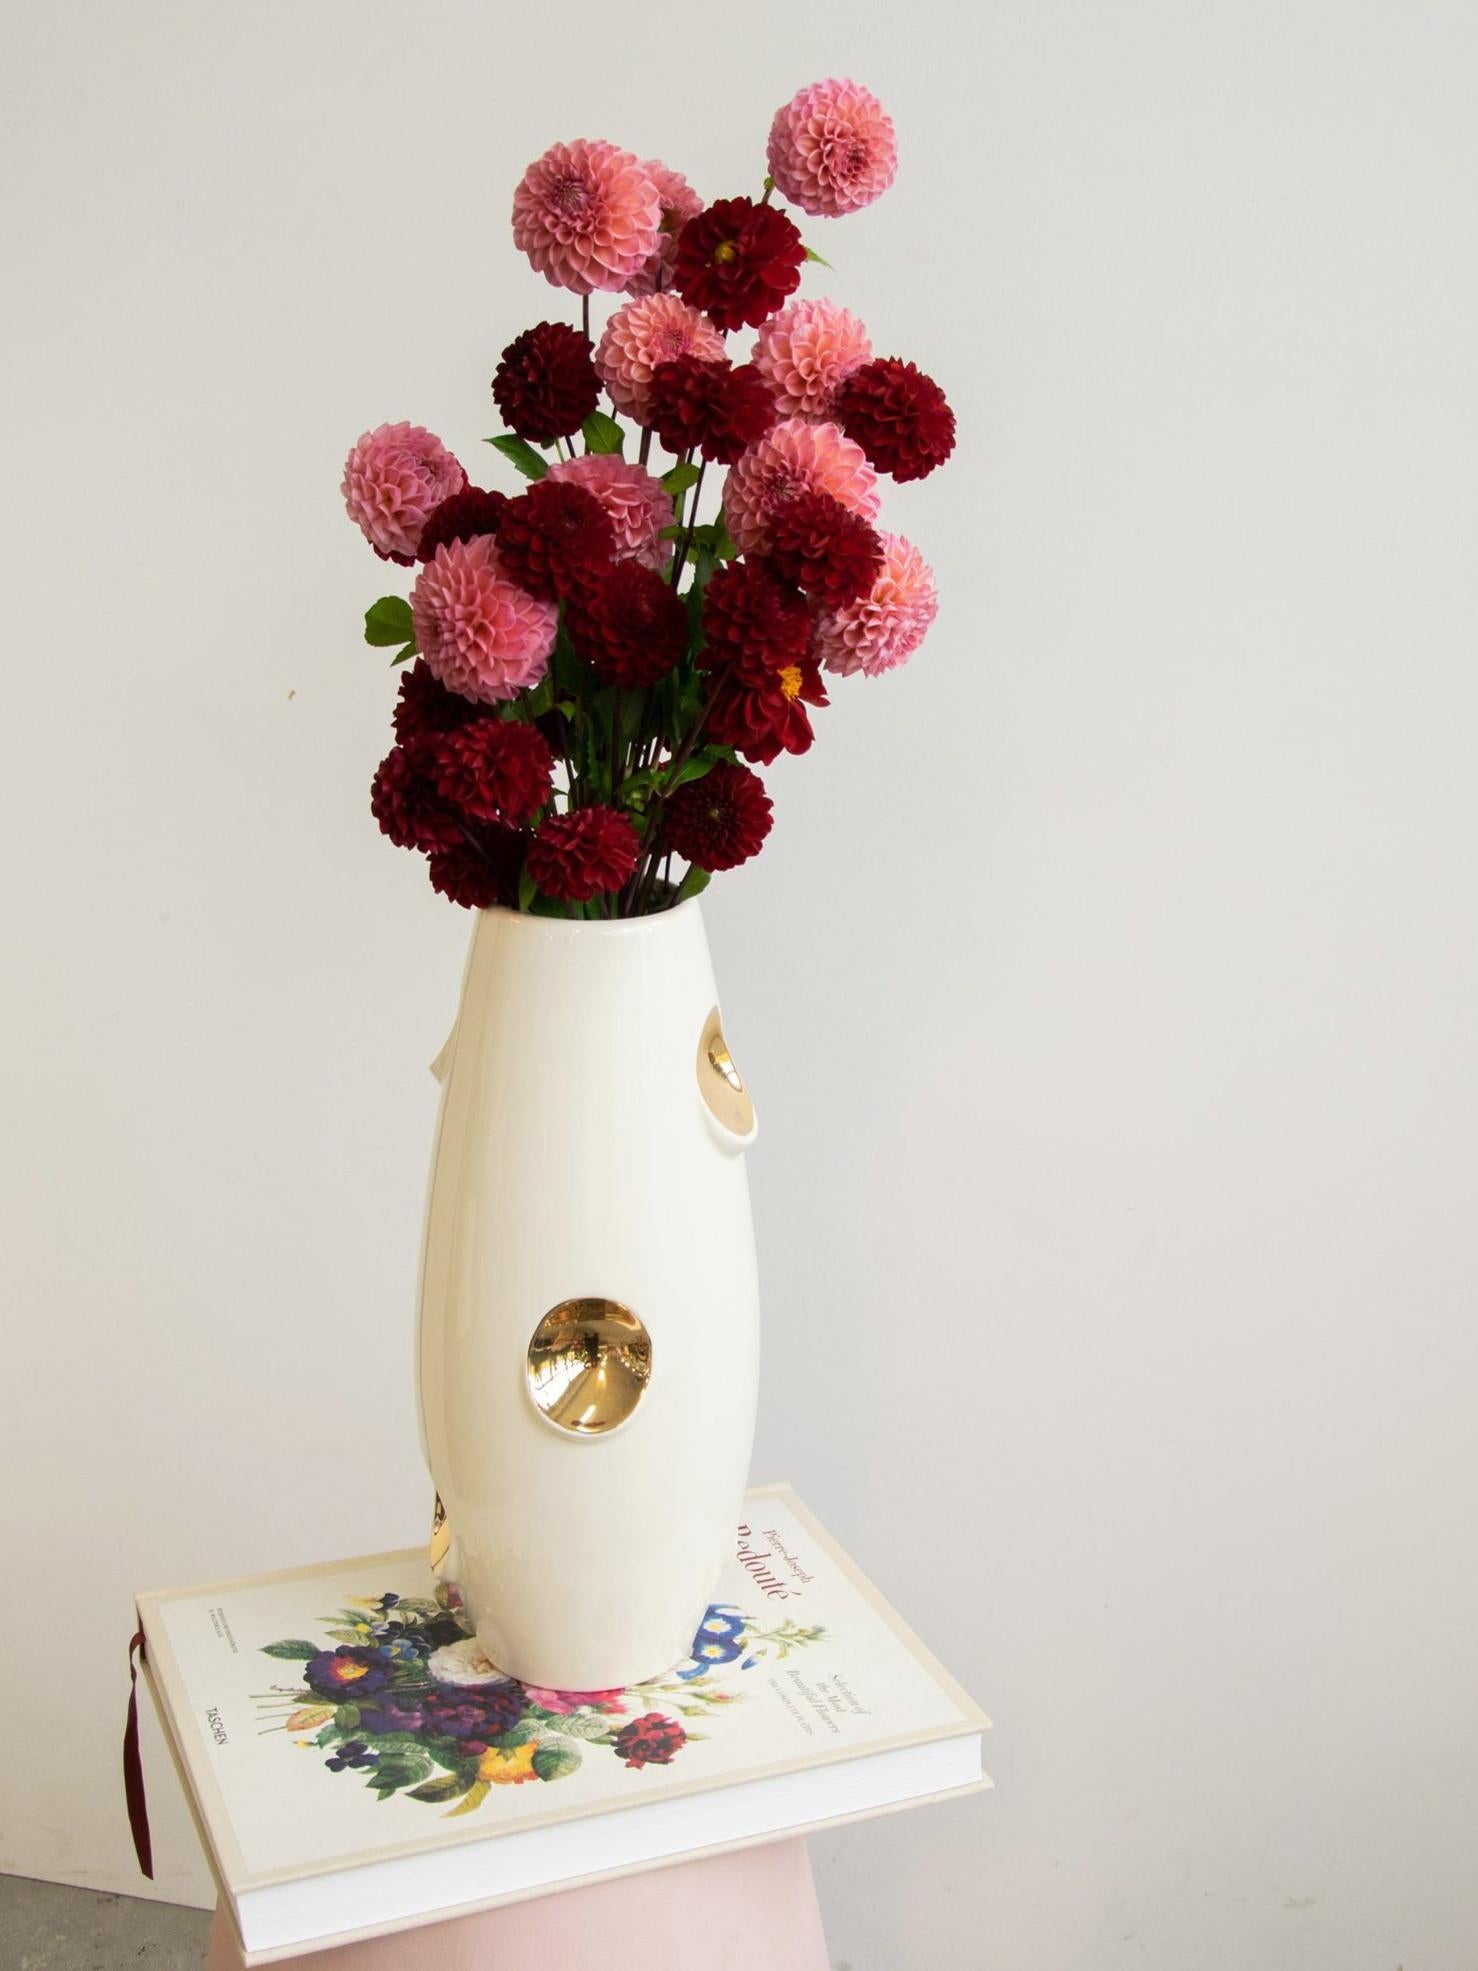 Le vase OKO est la création la plus célèbre de Malwina Konopacka. Son nom vient des évidements ovales dans le corps du vase. Dans la version GOLD, les évidements caractéristiques sont remplis d'or, ce qui, associé à la teinte beige naturelle de